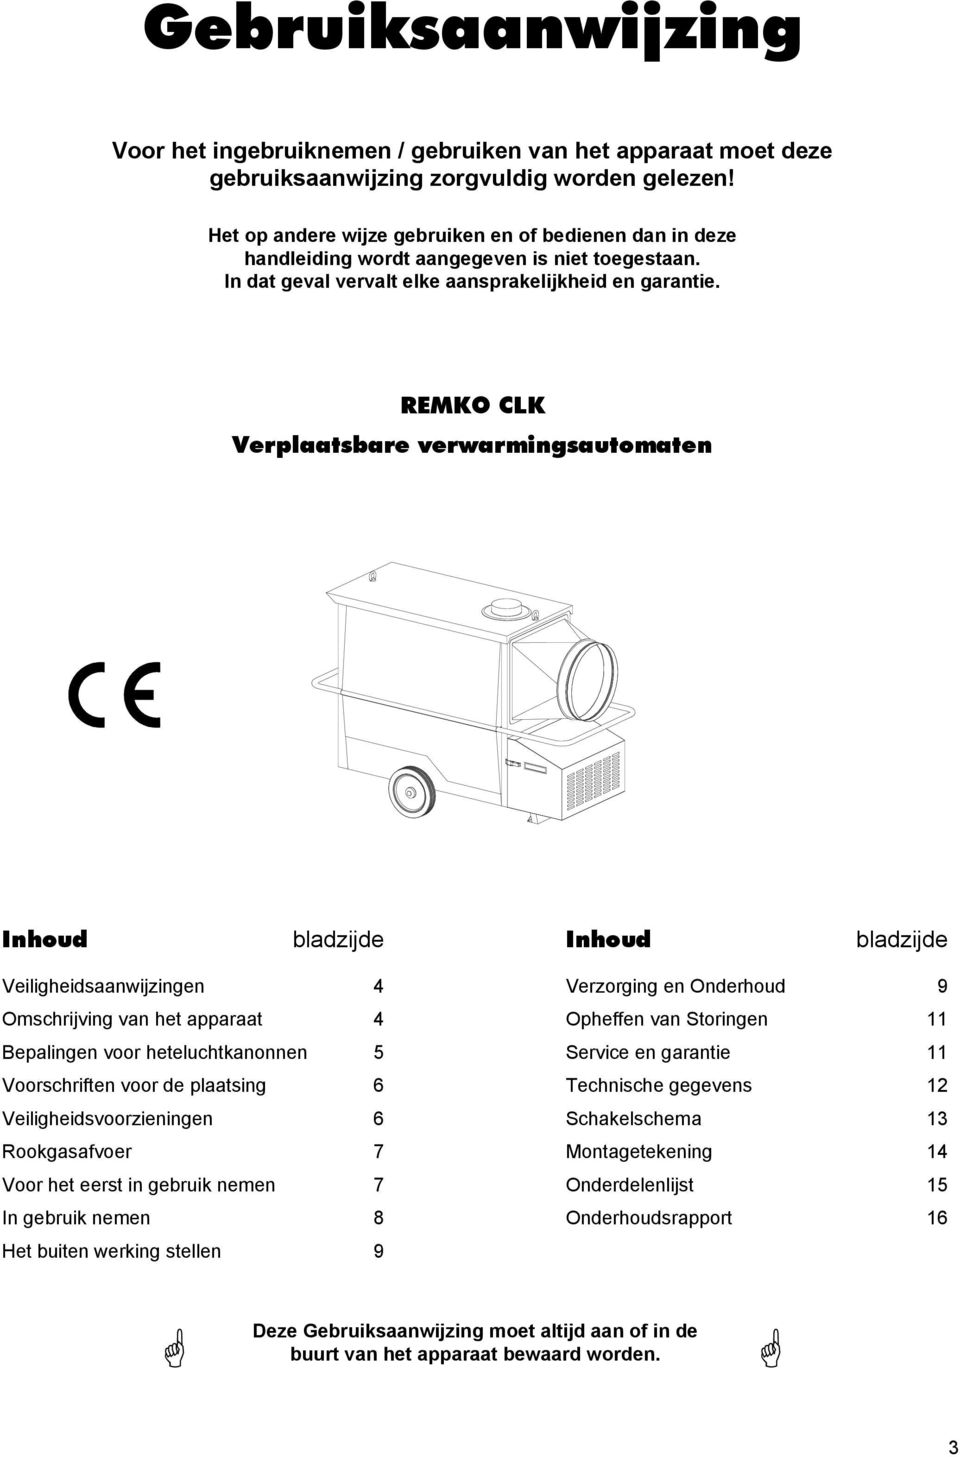 REMKO CLK Verplaatsbare verwarmingsautomaten Inhoud bladzijde Inhoud bladzijde Veiligheidsaanwijzingen 4 Omschrijving van het apparaat 4 Bepalingen voor heteluchtkanonnen 5 Voorschriften voor de